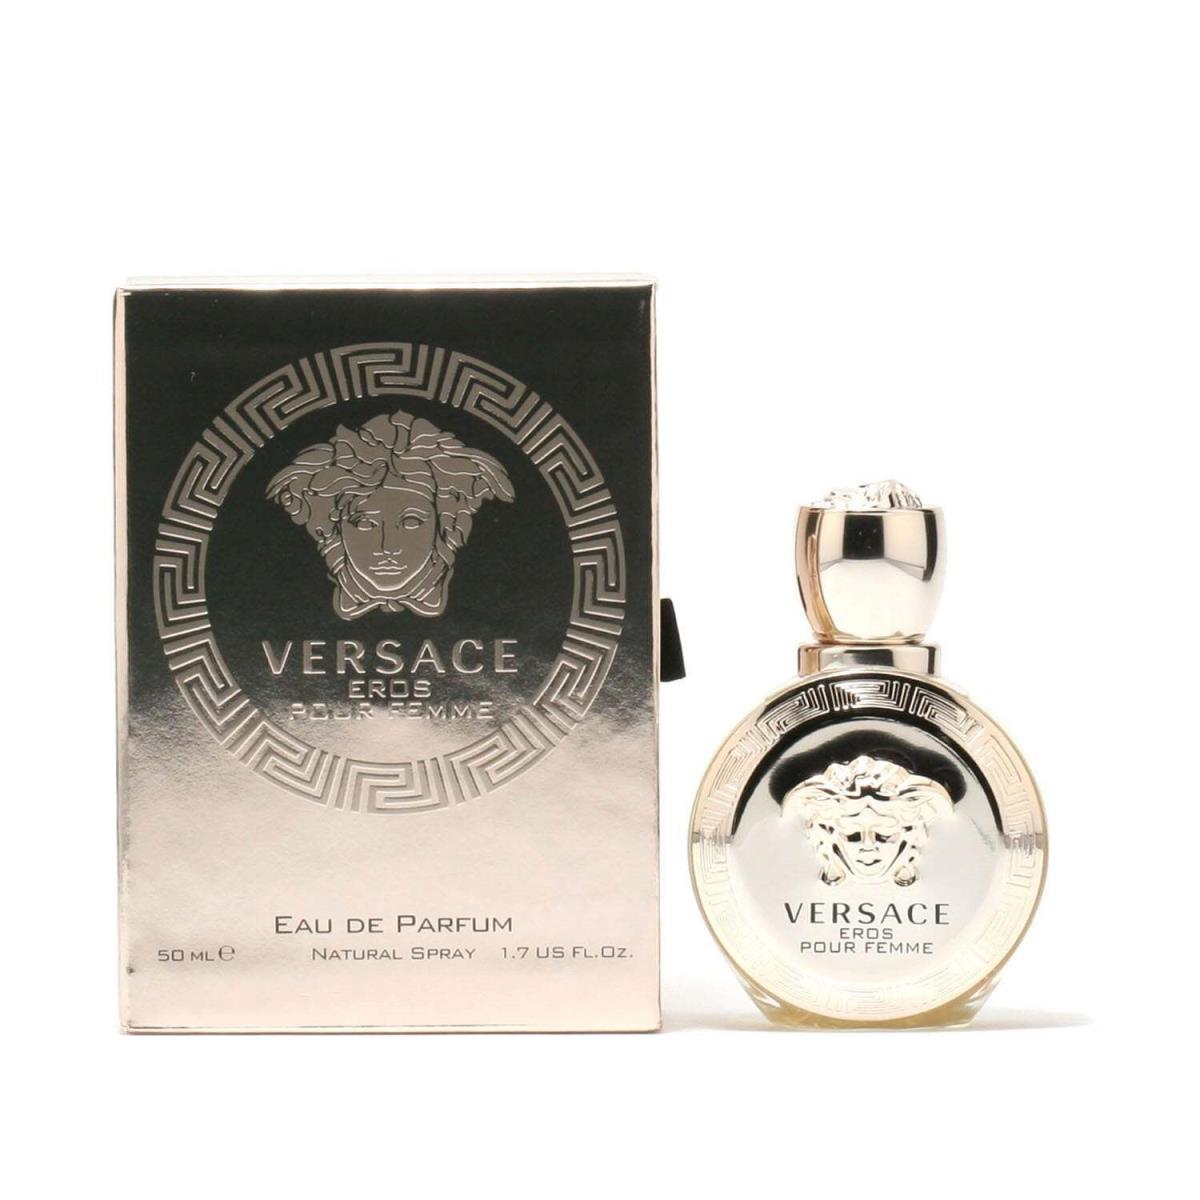 Versace Eros by Versace Eau de Parfum For Women 1.7 fl oz